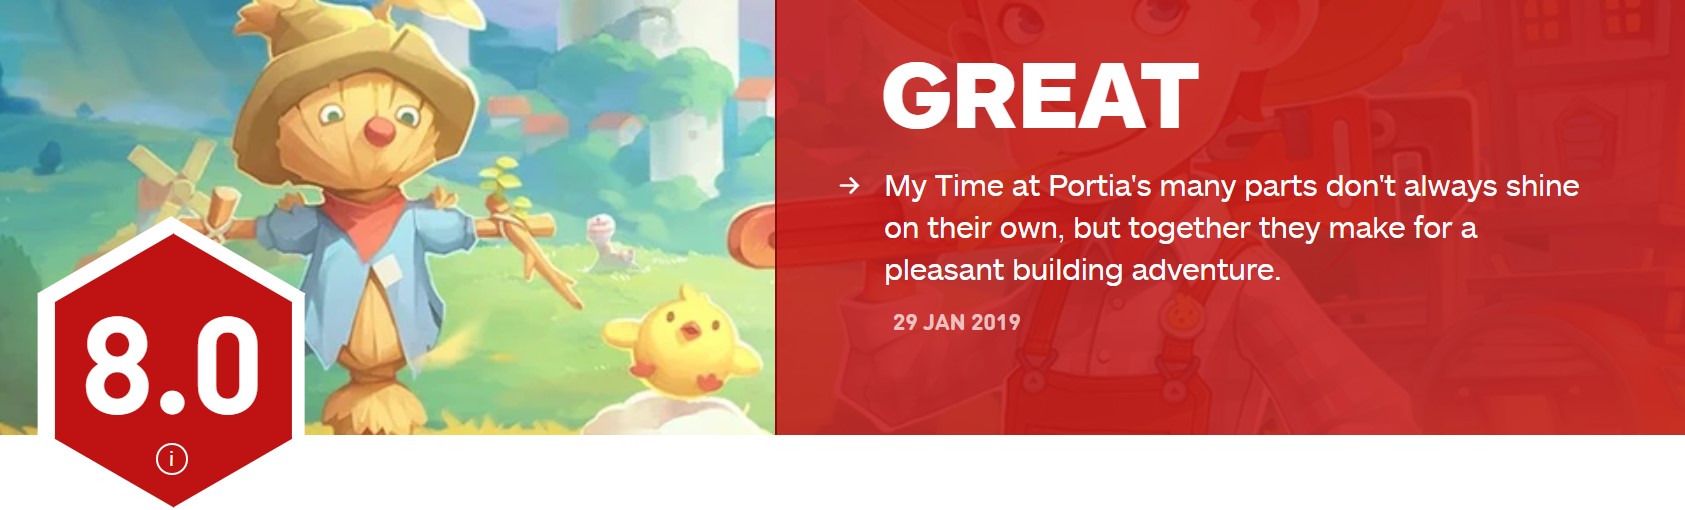 国产游戏《波西亚时光》IGN 8.0分 令人享受的建造冒险